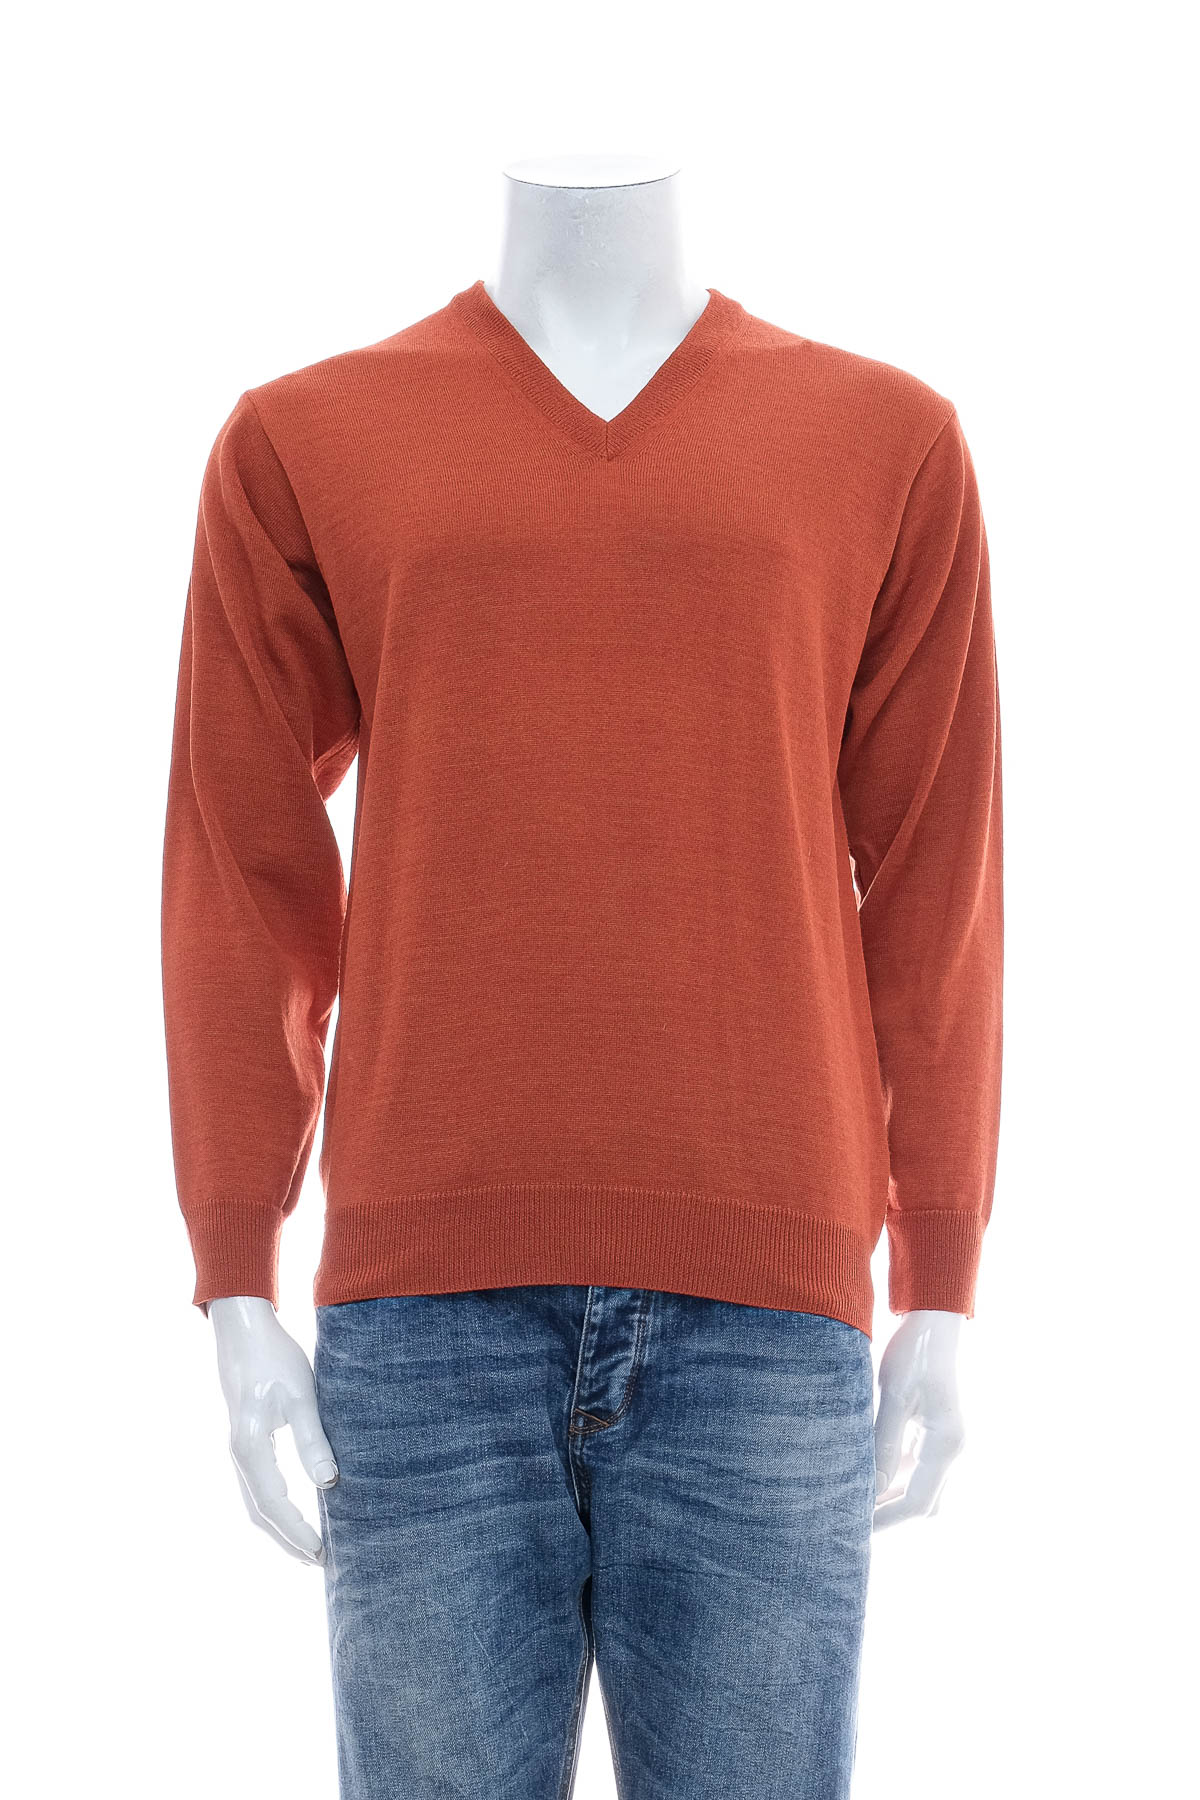 Men's sweater - BELIKA - 0